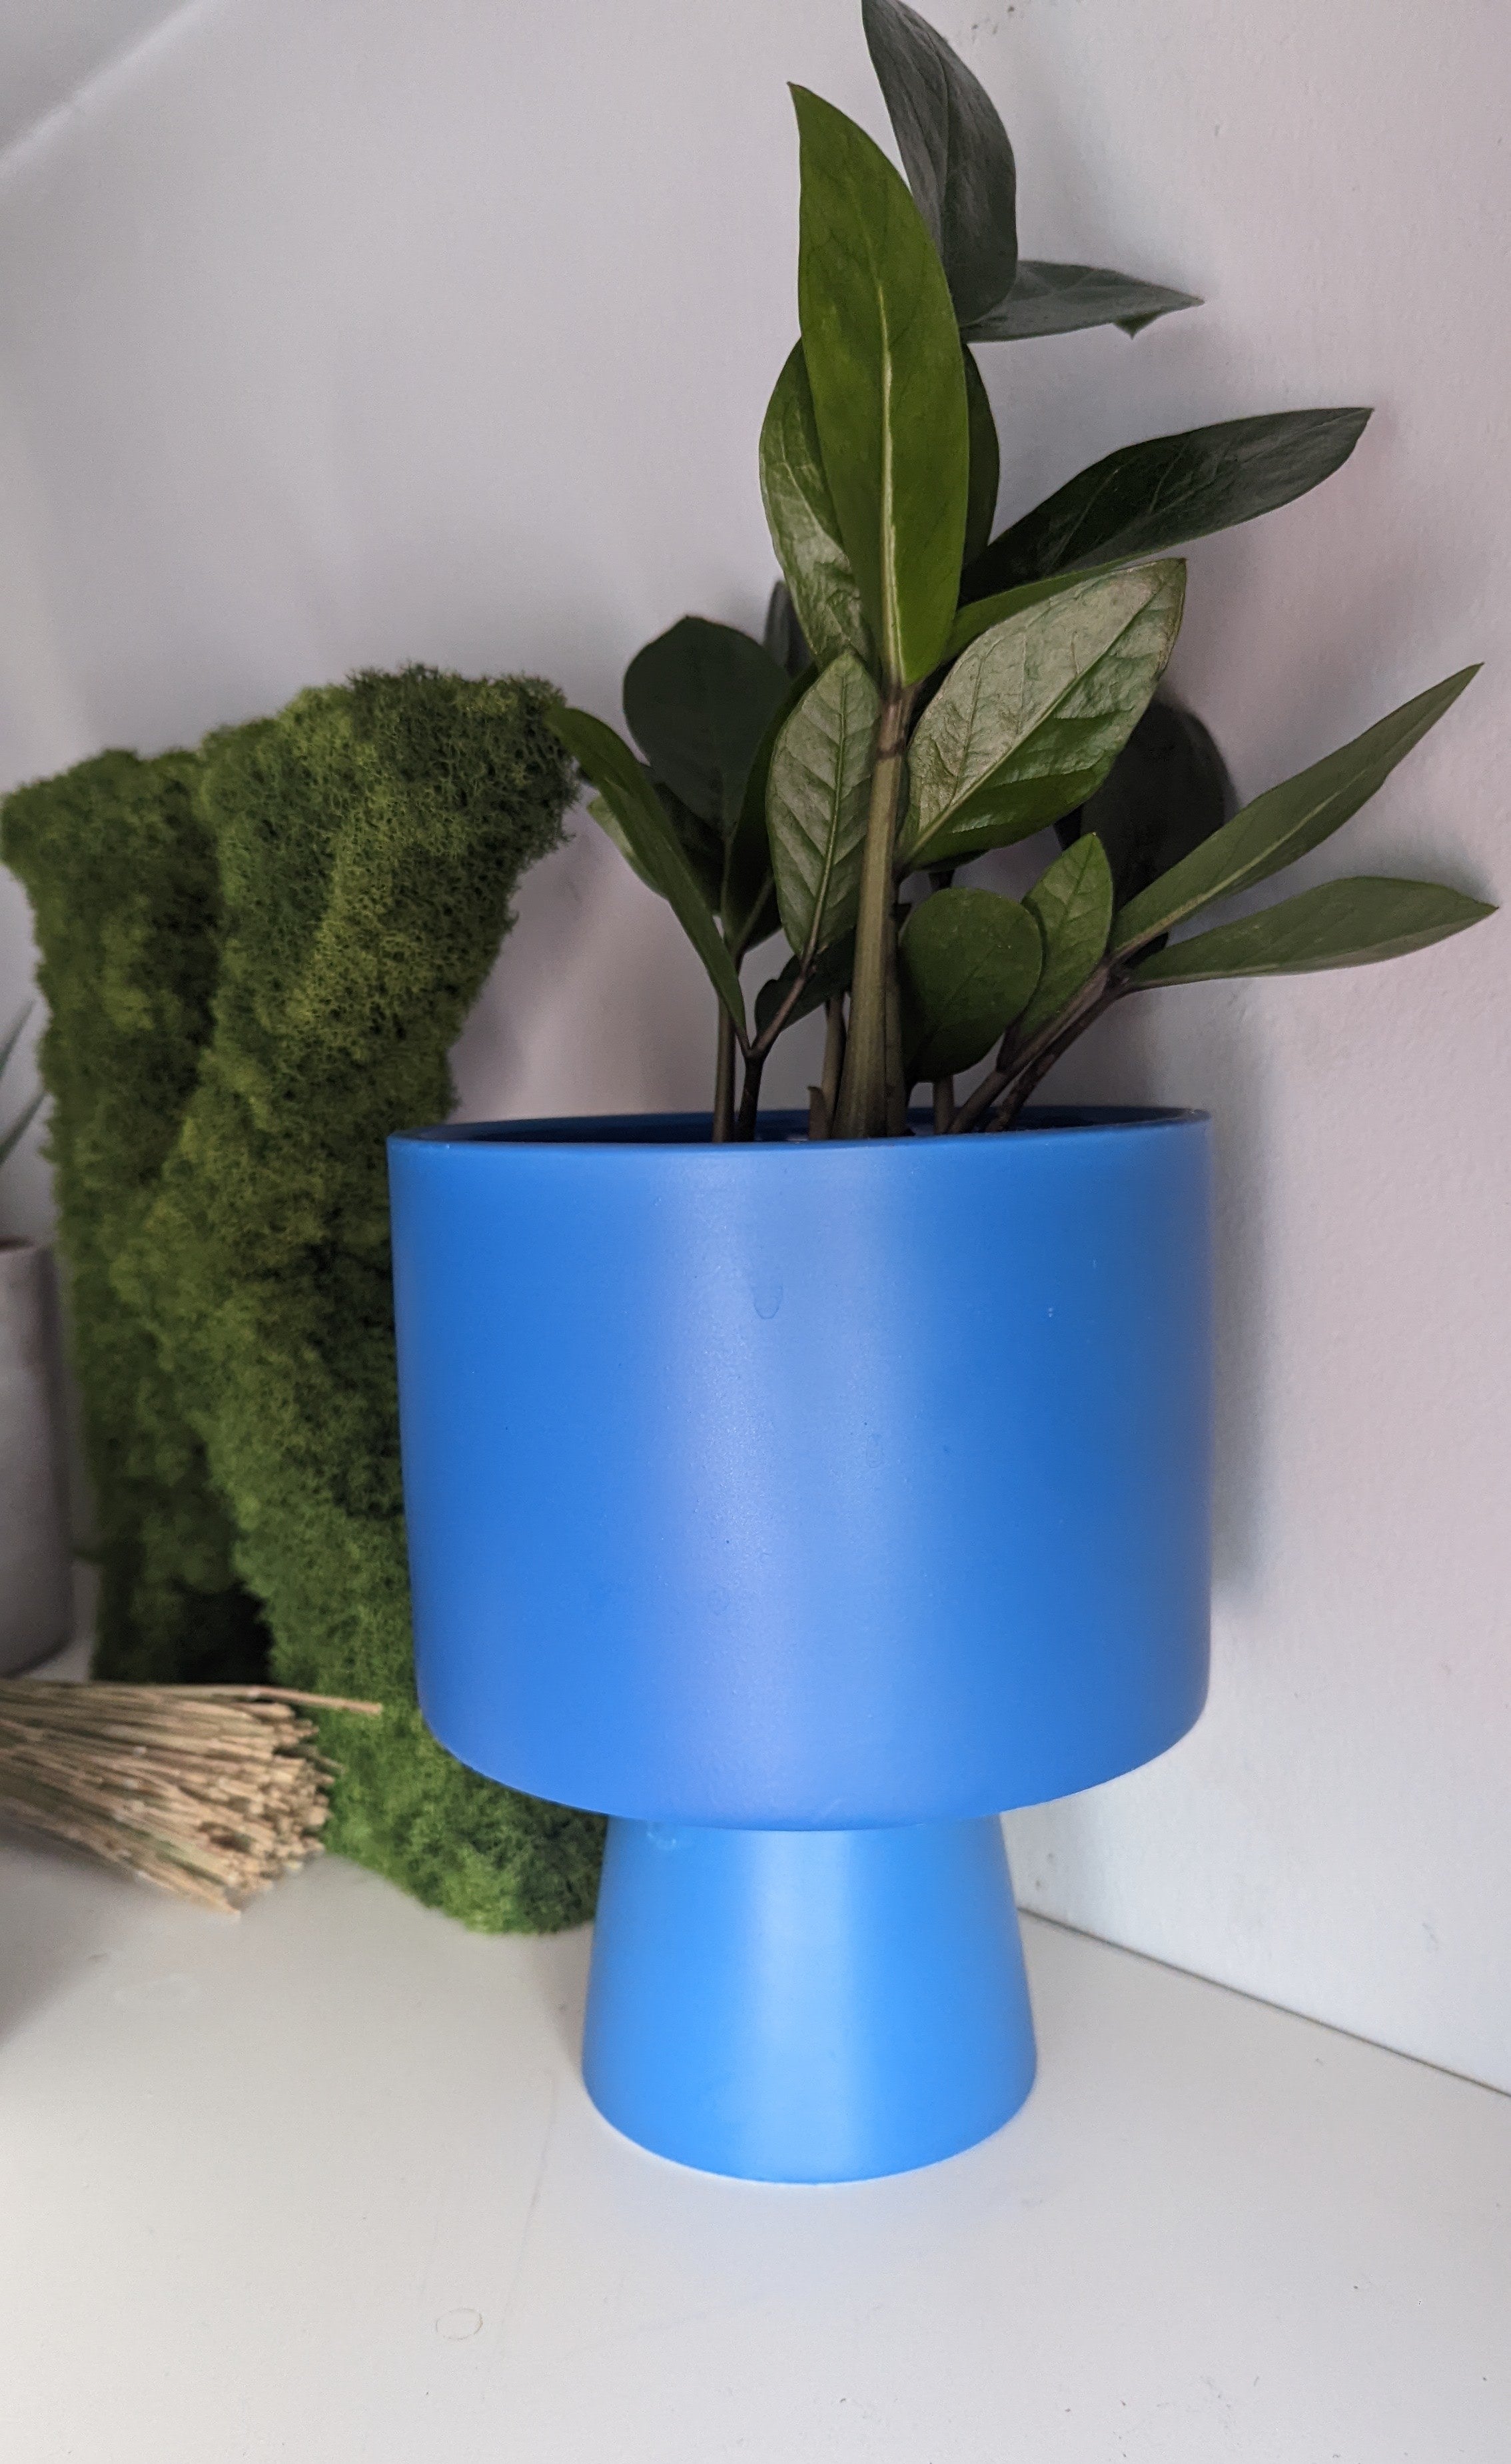 A plant pot on a shelf holding a ZZ plant